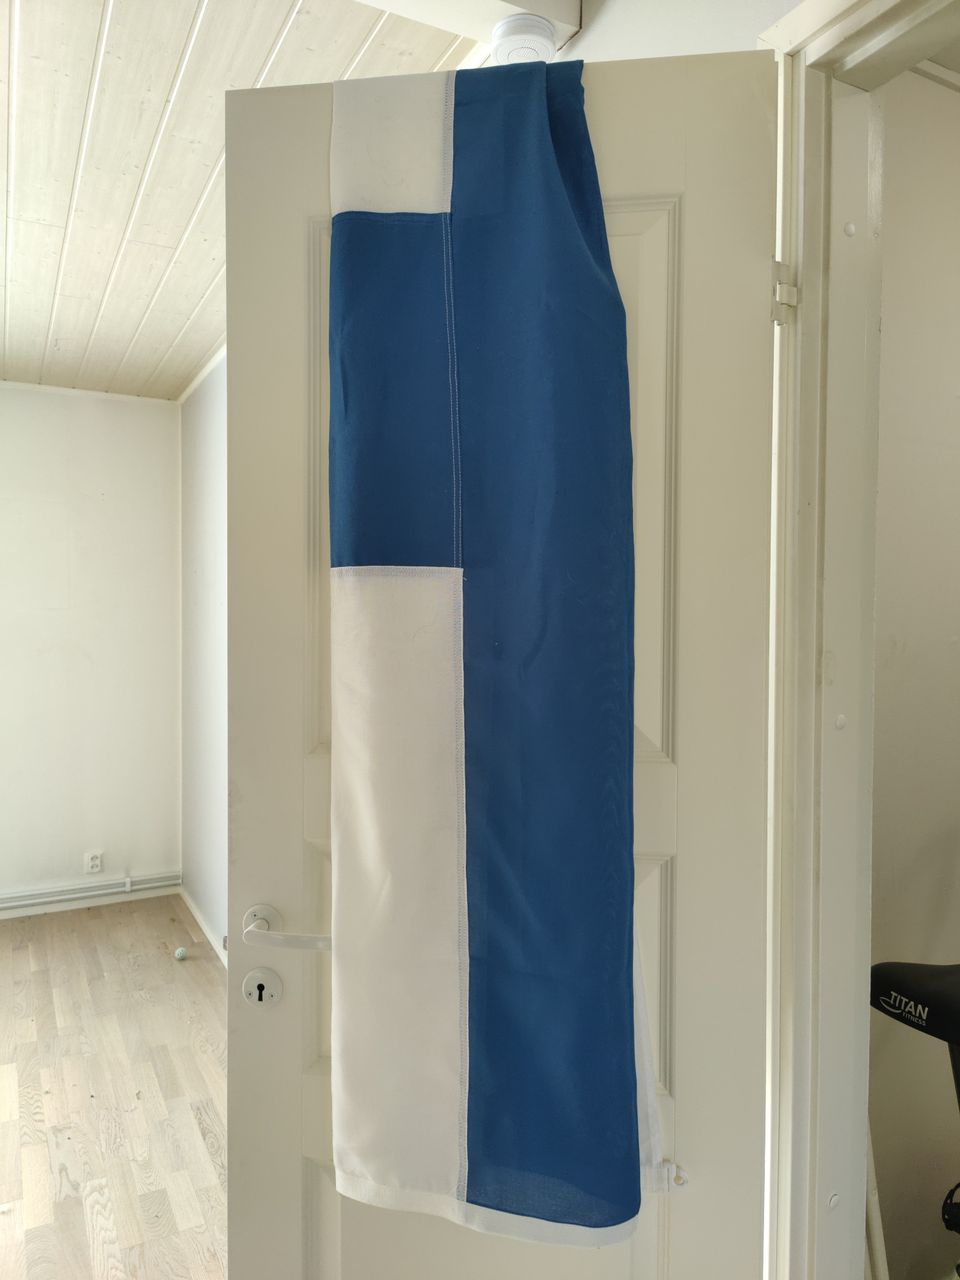 Suomen lippu lipputankoon